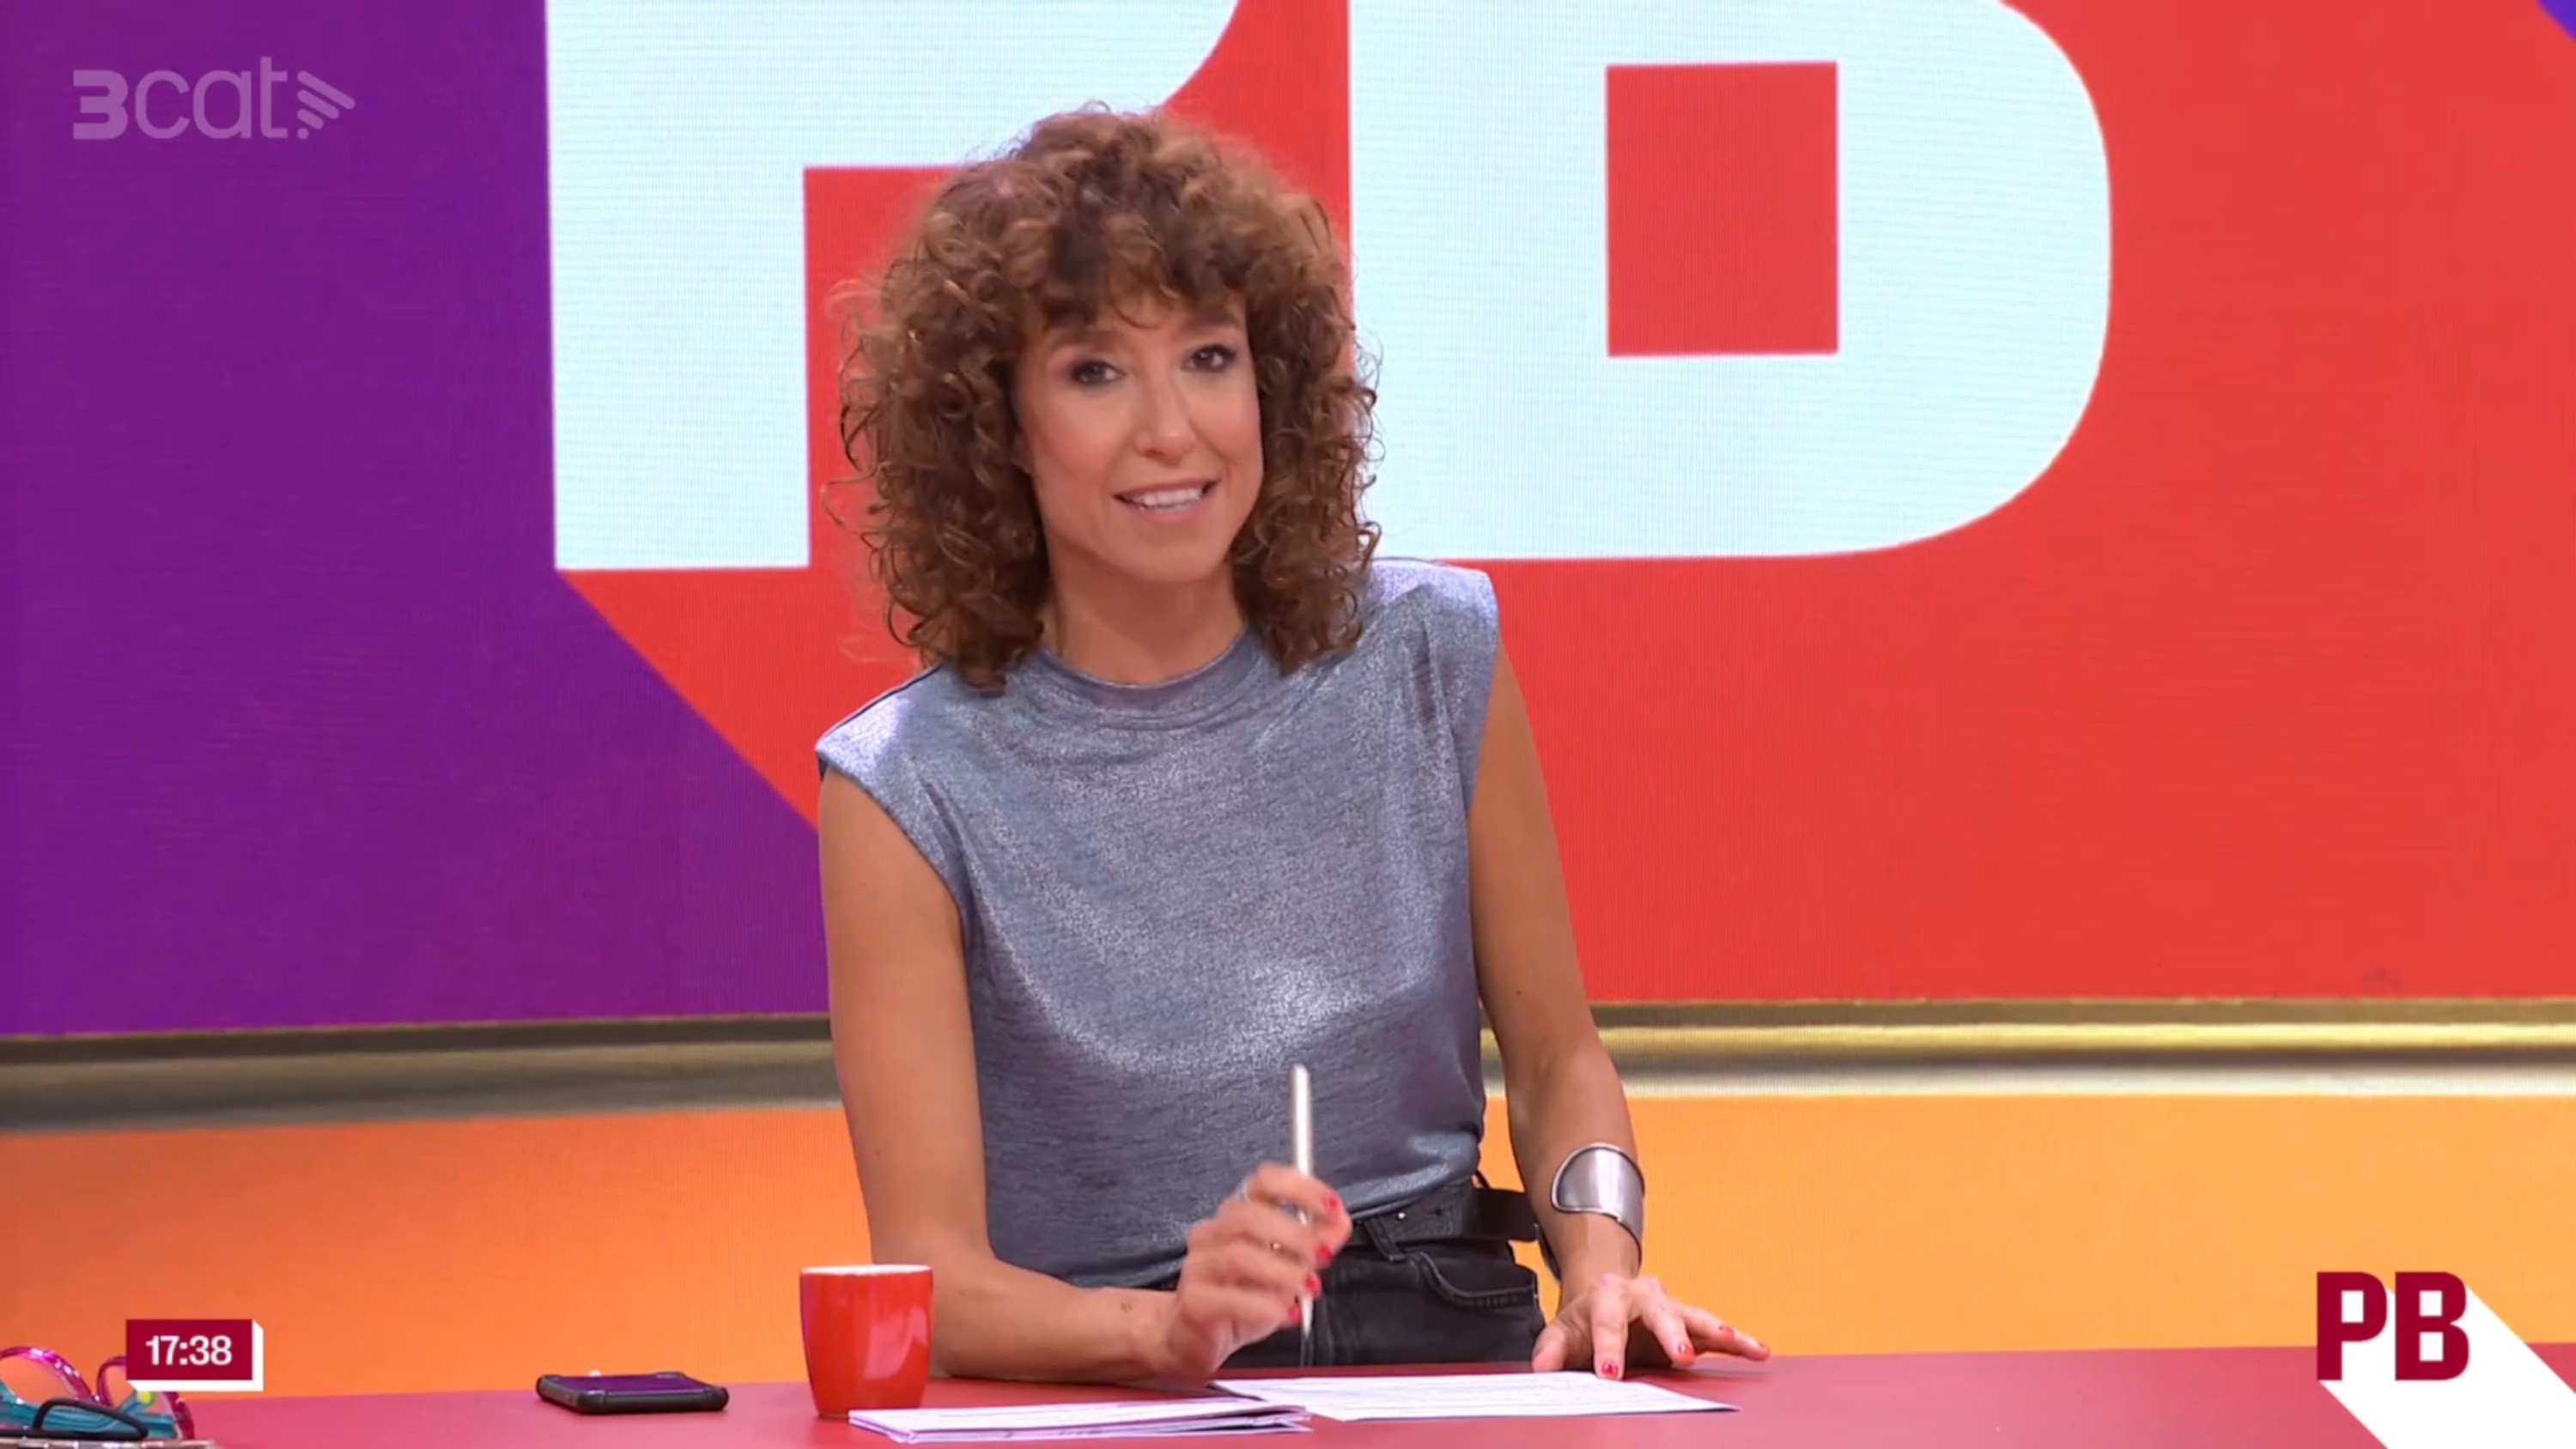 Enrenou per una convidada molt espanyola a TV3: "Feu pena, sou Telecinco, vergonya"